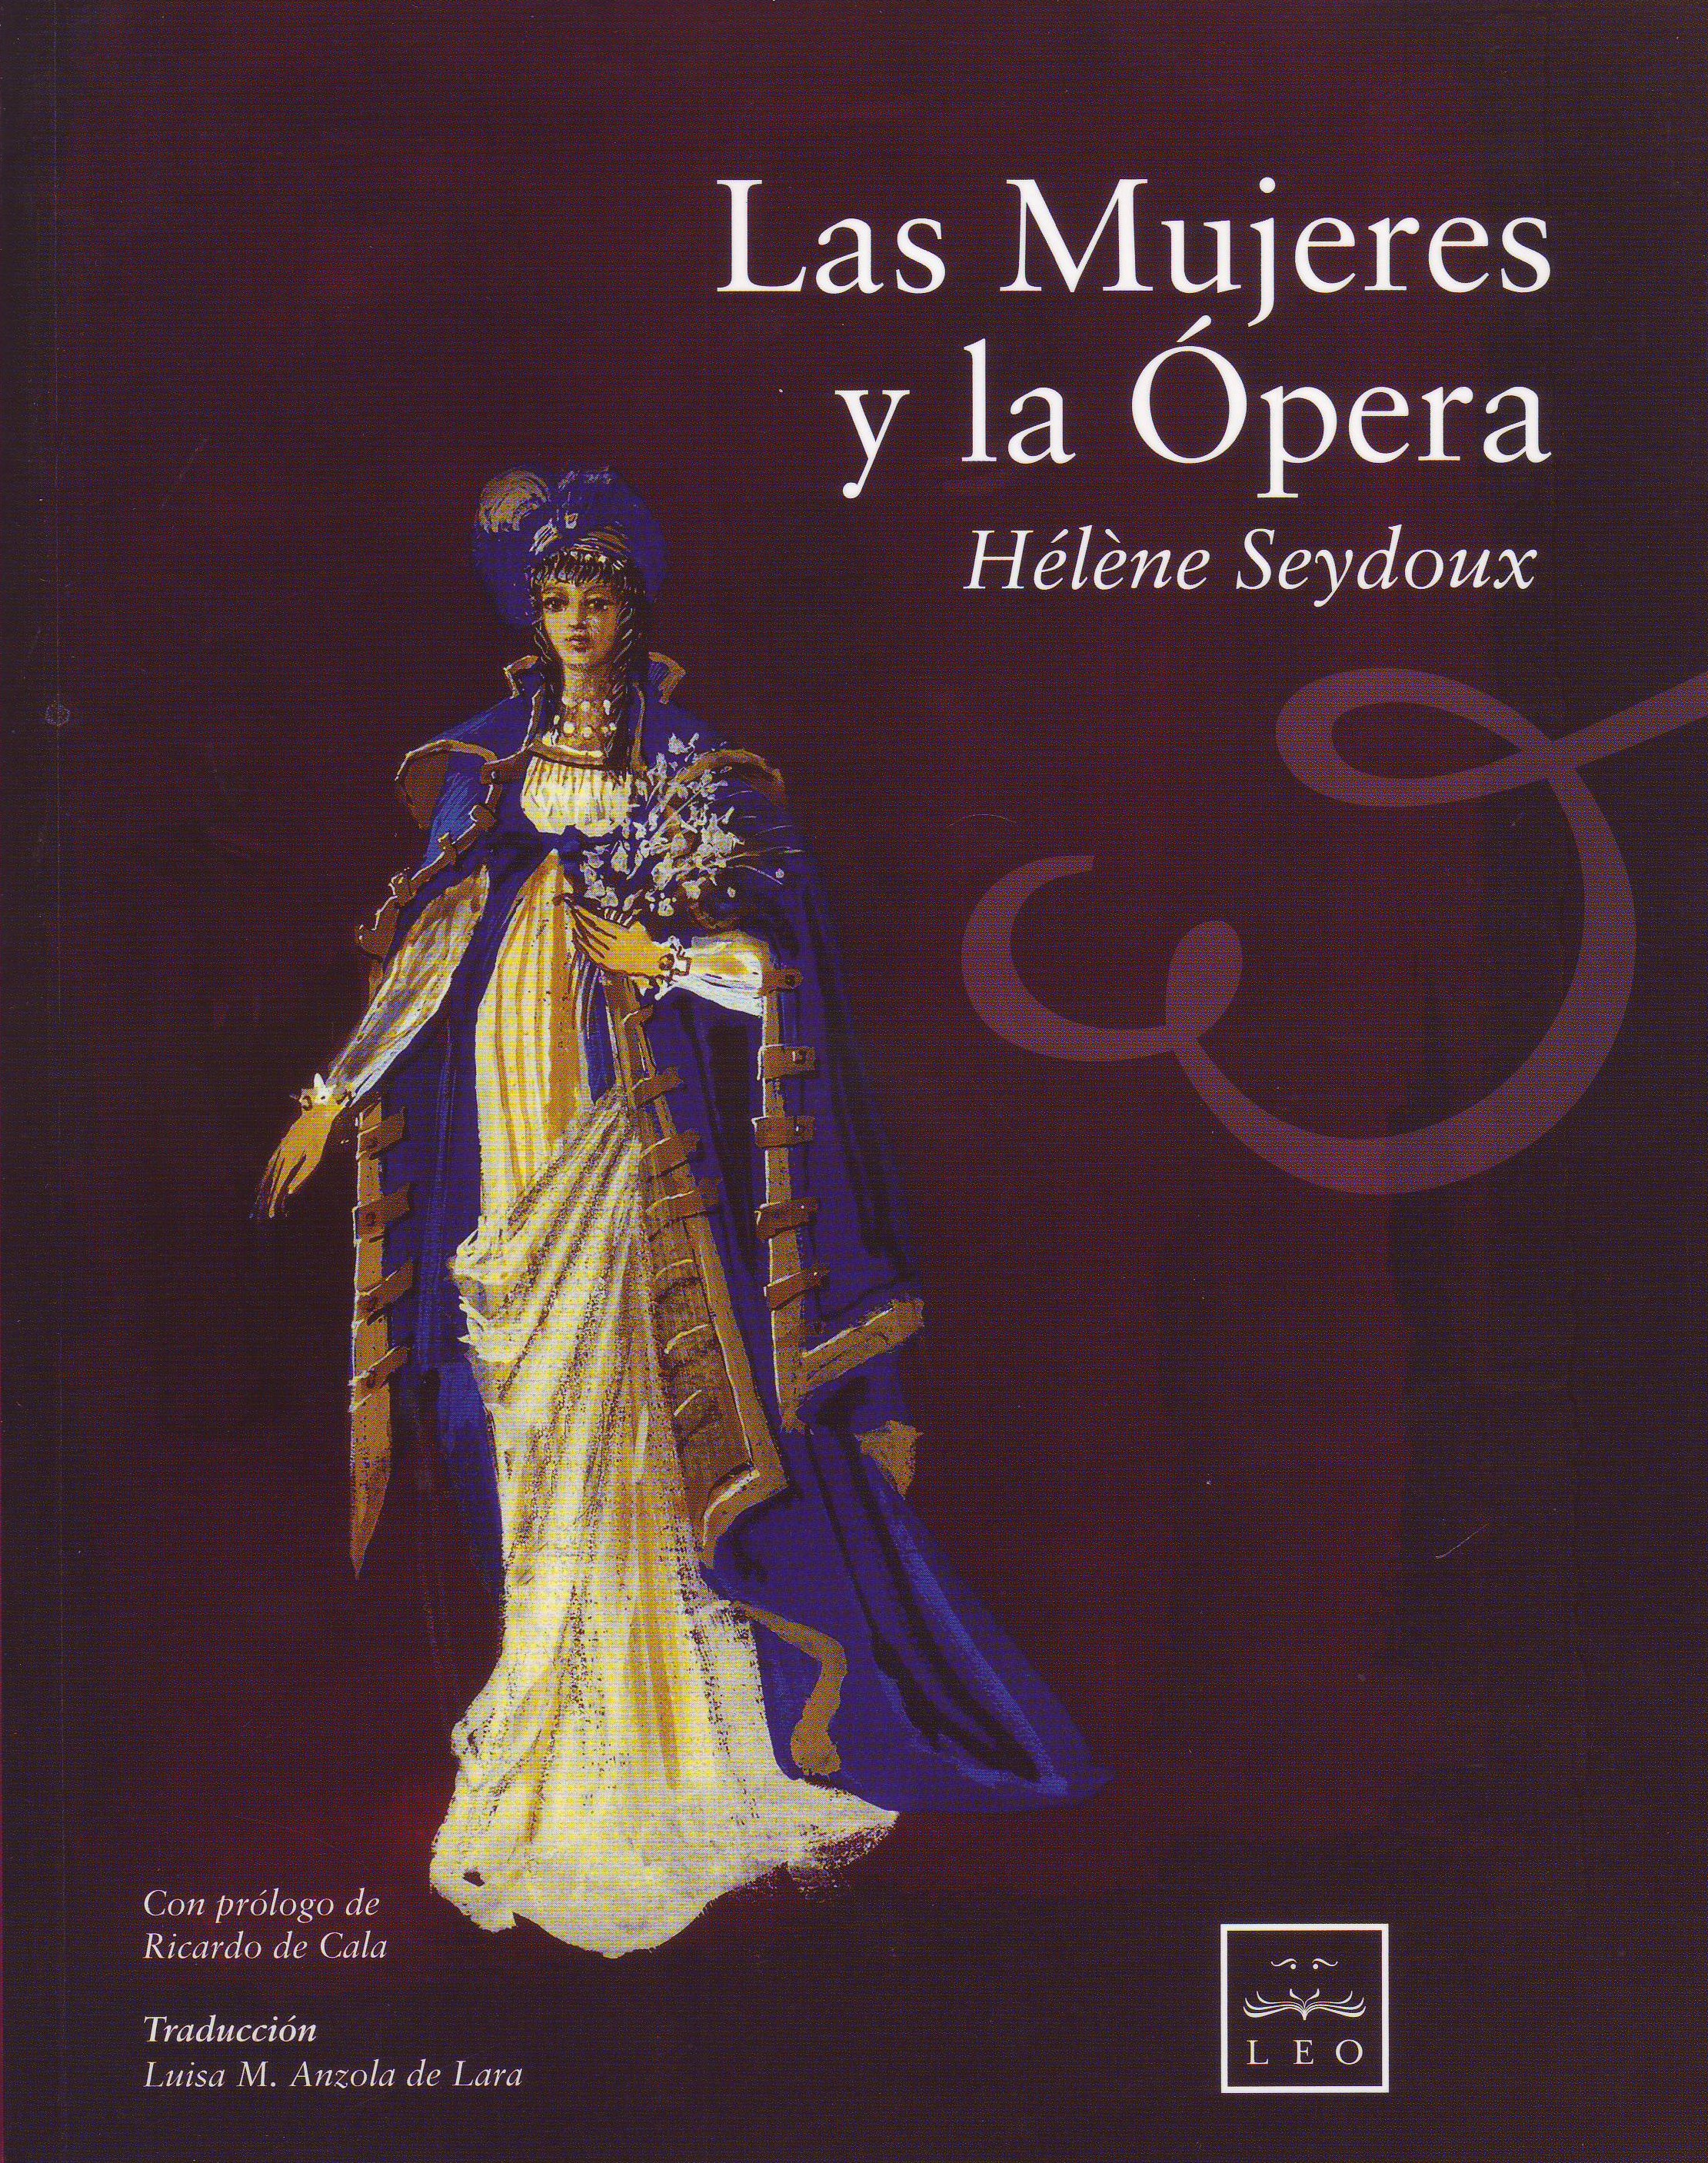 Presentación del libro "Las mujeres y la ópera" de H. Seydoux el miércoles 14 a las 20:00 horas